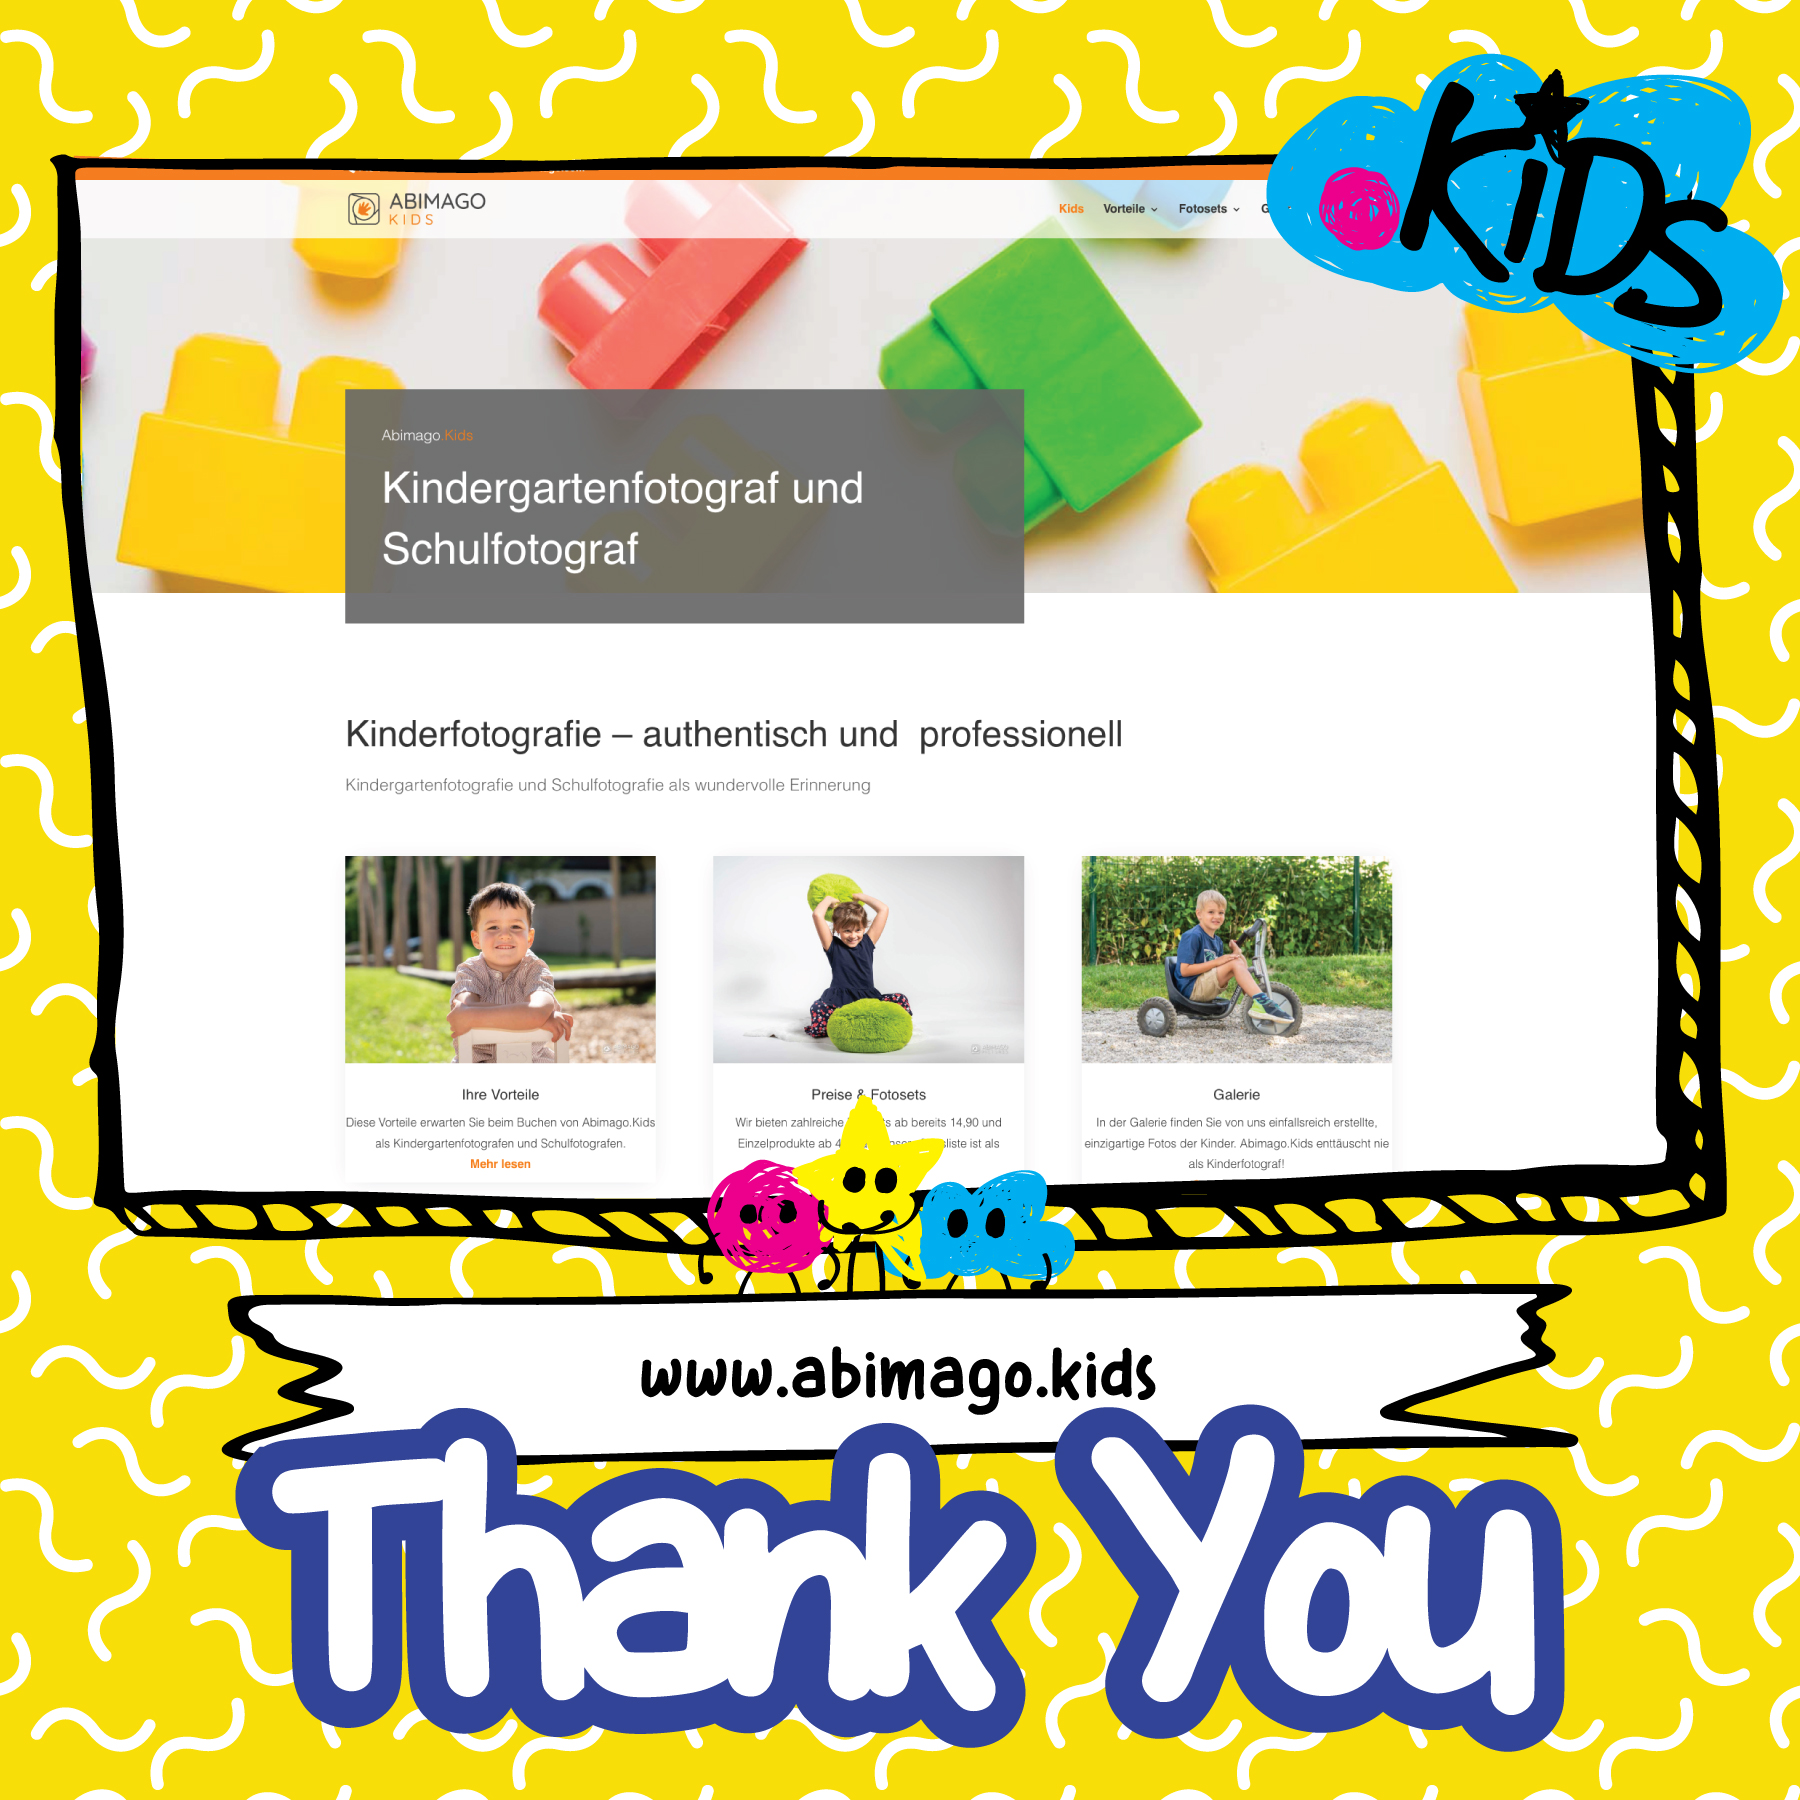 Image: .KiDS website sighting - abimago.kids